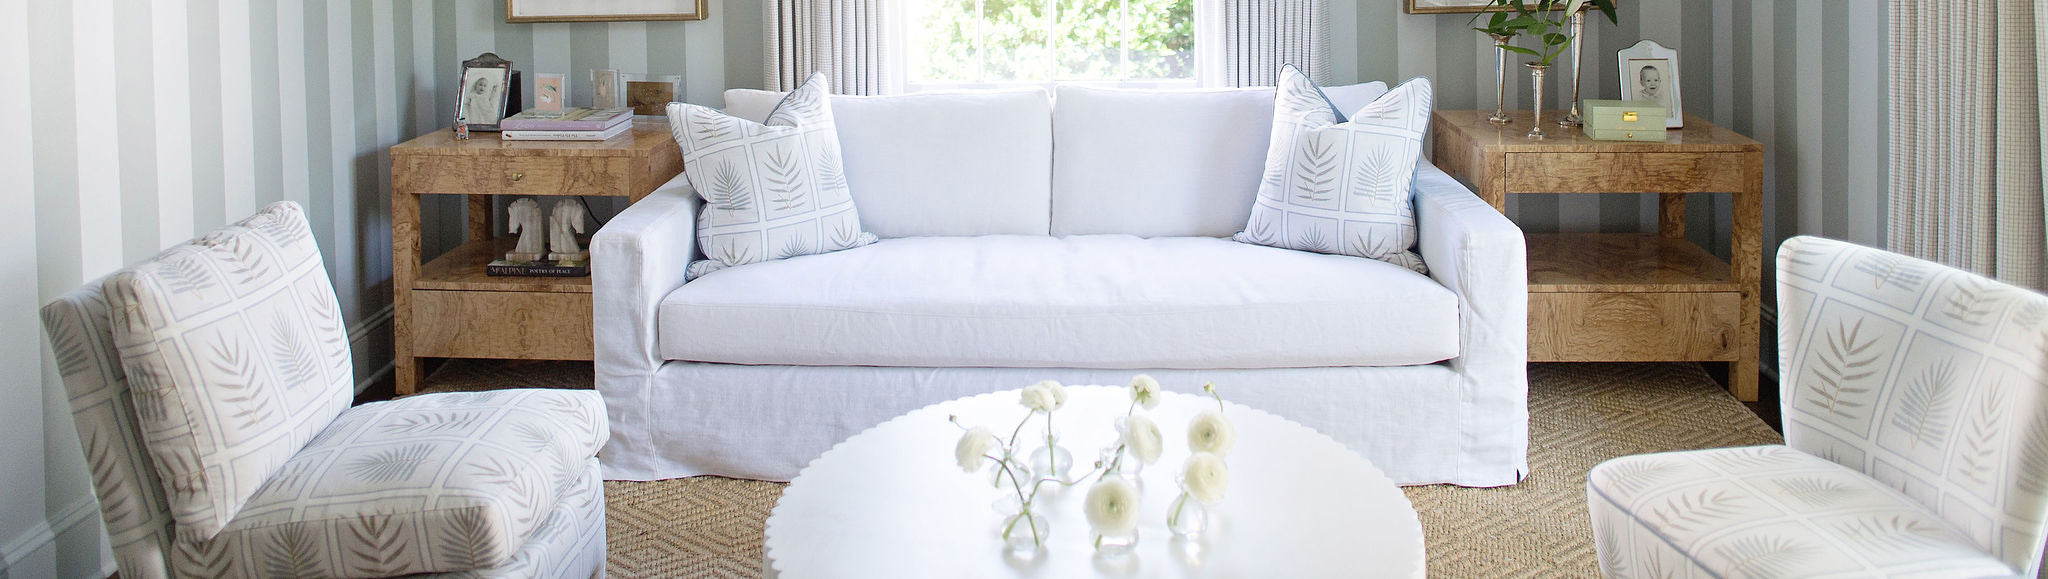 Custom Upholstered Sofas